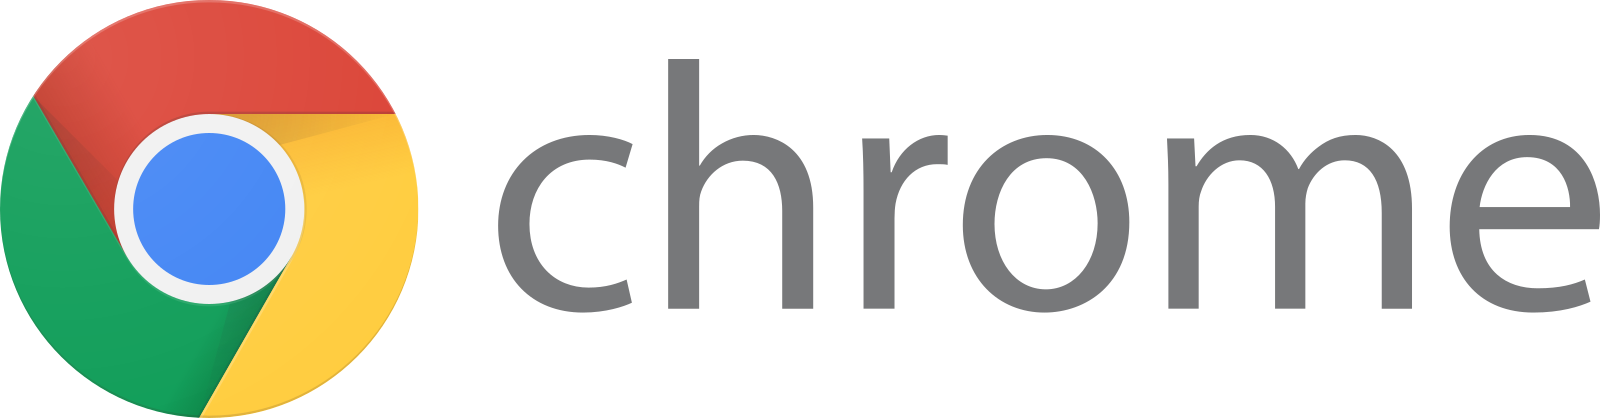 google chrome logo 5 - Google Chrome Logo